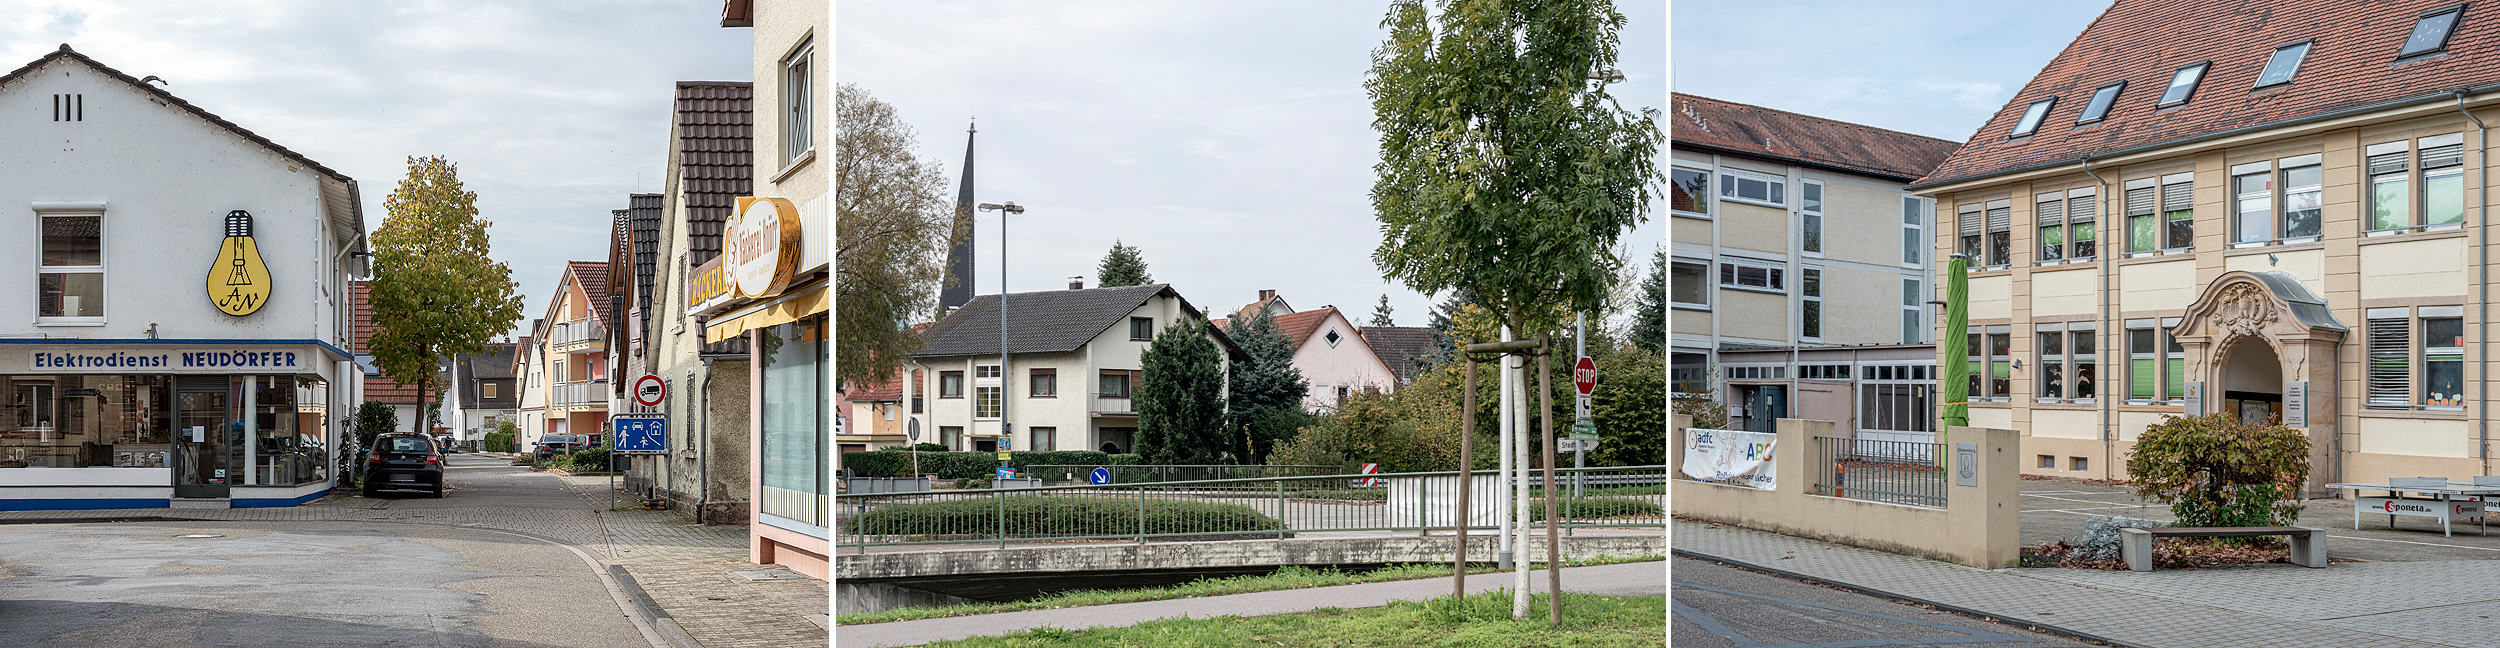 Collage de trois images avec des maisons à Niederbühl